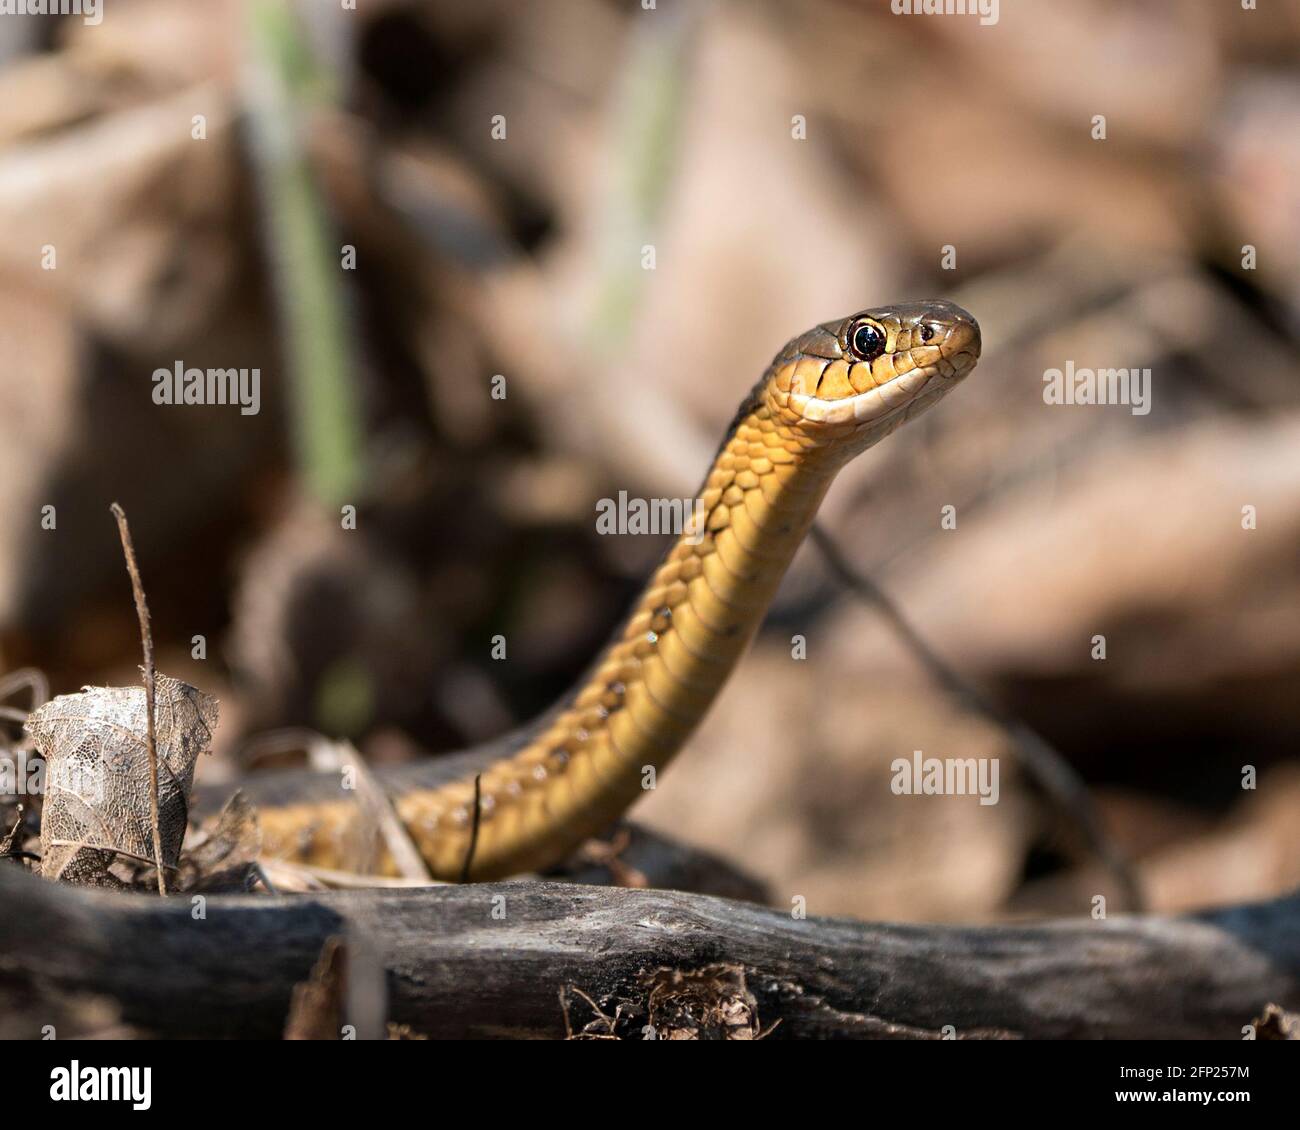 Vista ravvicinata del profilo della testa di serpente nel suo ambiente e habitat con uno sfondo sfocato. Immagine. Immagine. Verticale. Foto Stock